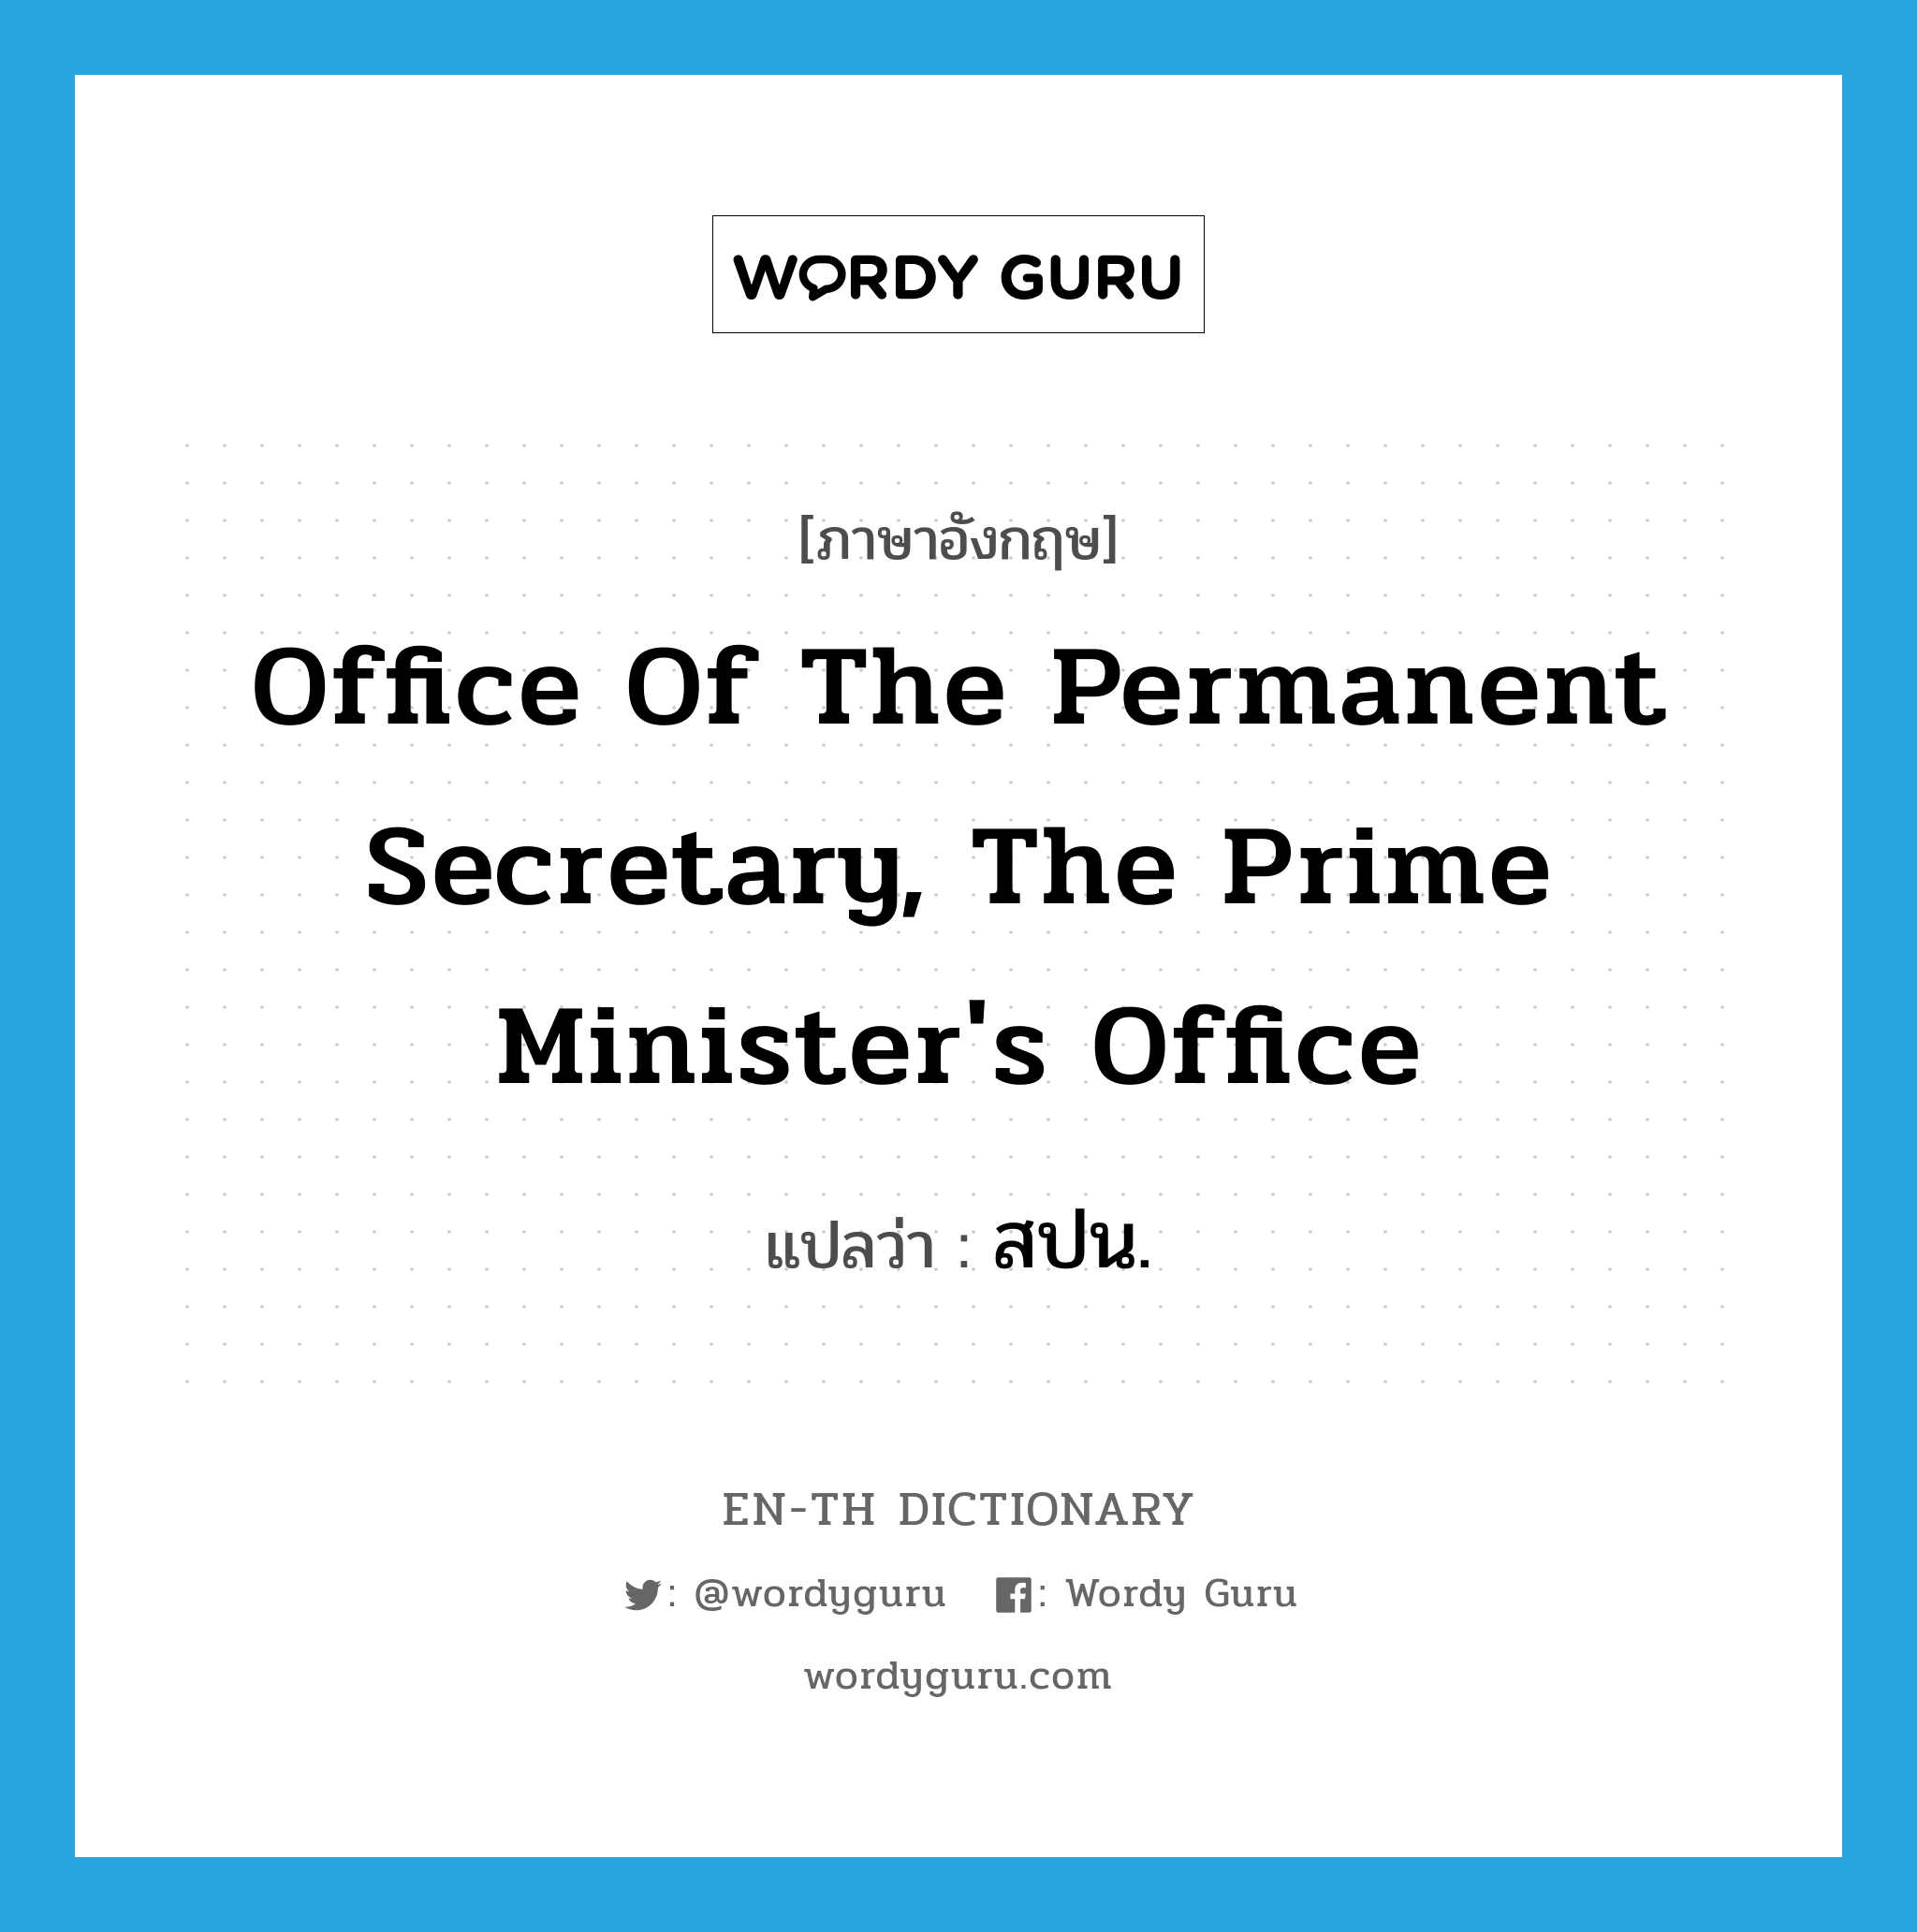 สปน. ภาษาอังกฤษ?, คำศัพท์ภาษาอังกฤษ สปน. แปลว่า Office of the Permanent Secretary, The Prime Minister's Office ประเภท N หมวด N